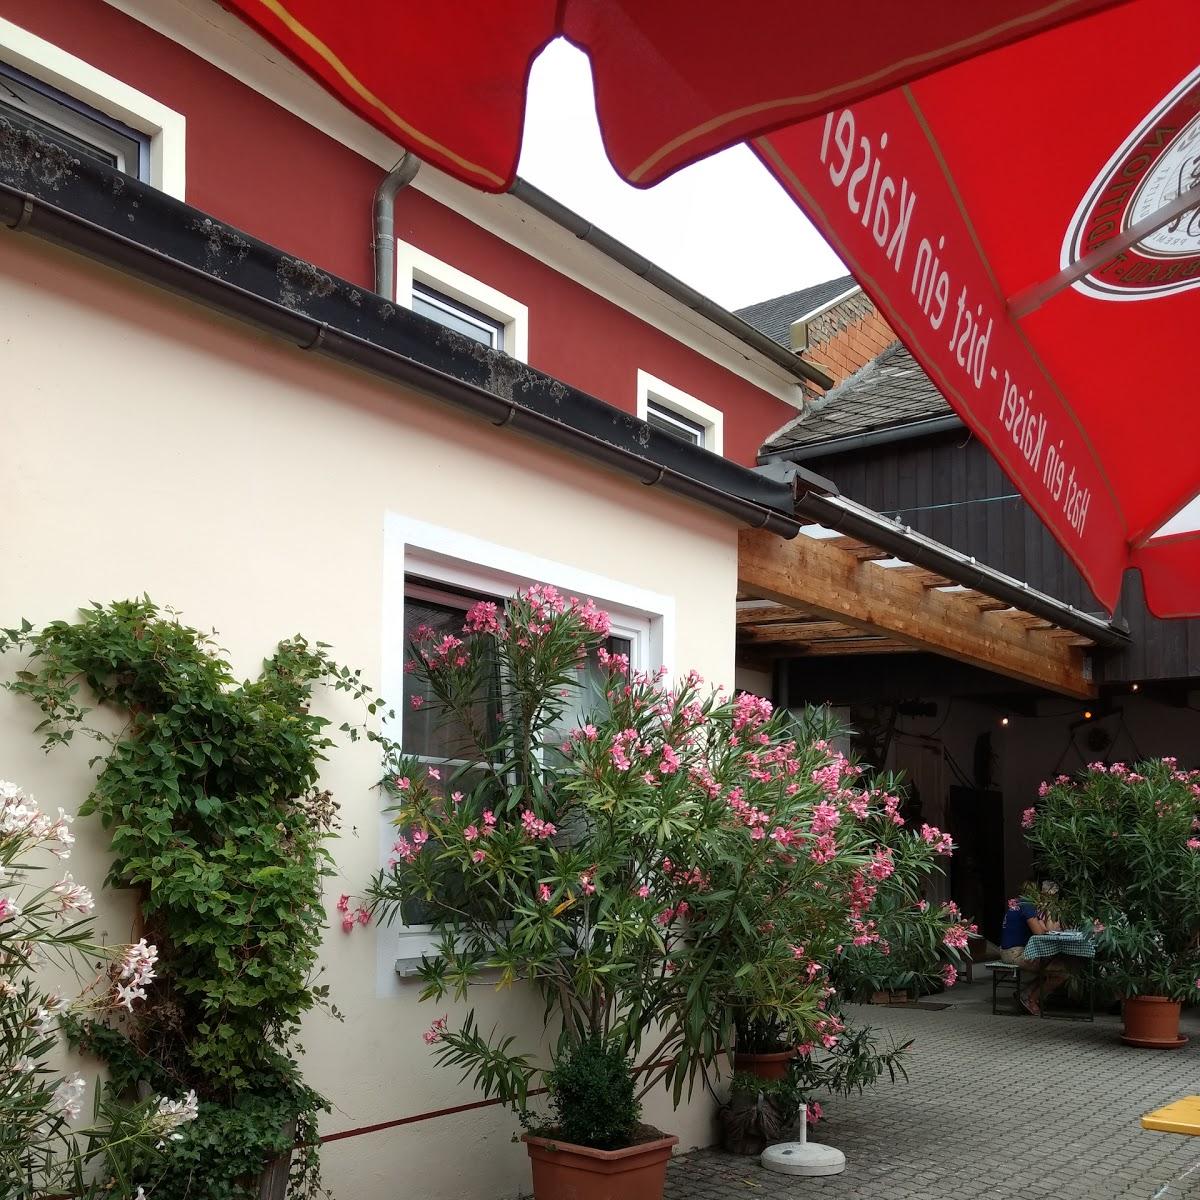 Restaurant "Gasthaus Schwaighofer-Zainer" in Hürm